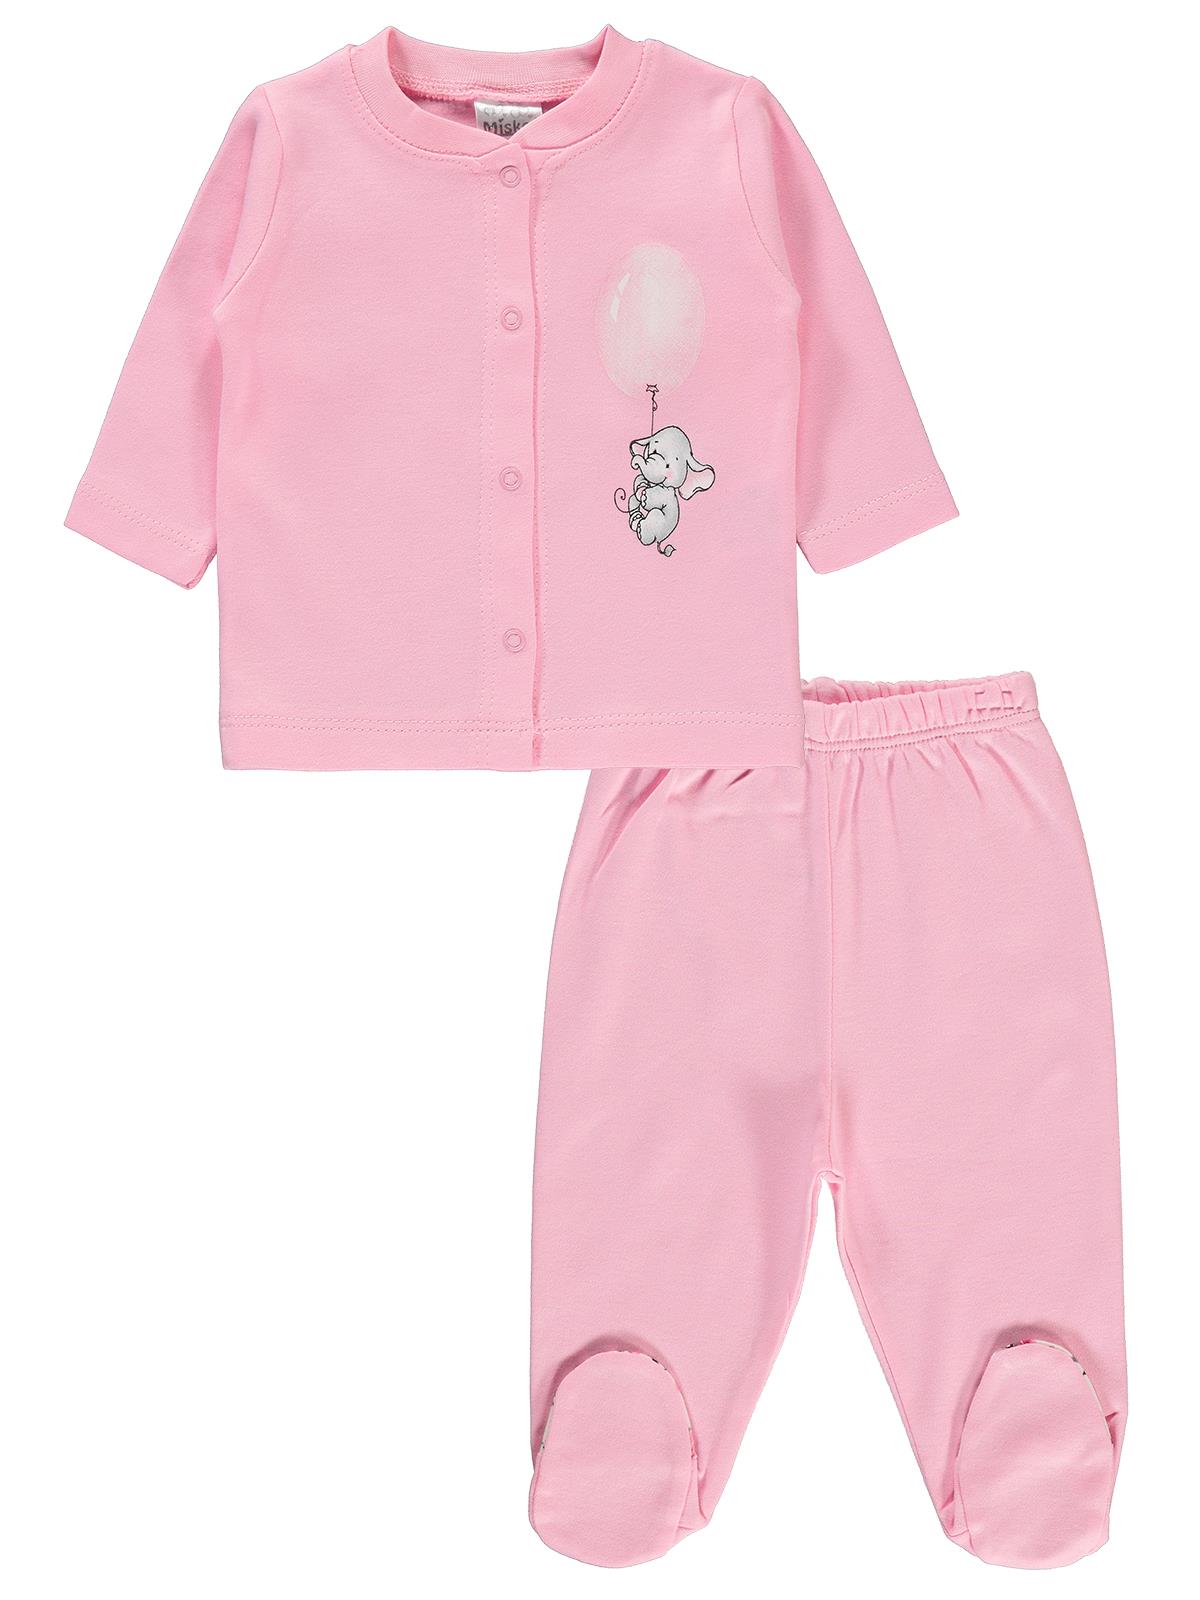 Misket Kız Bebek Pijama Takımı 0-6 Ay Pembe